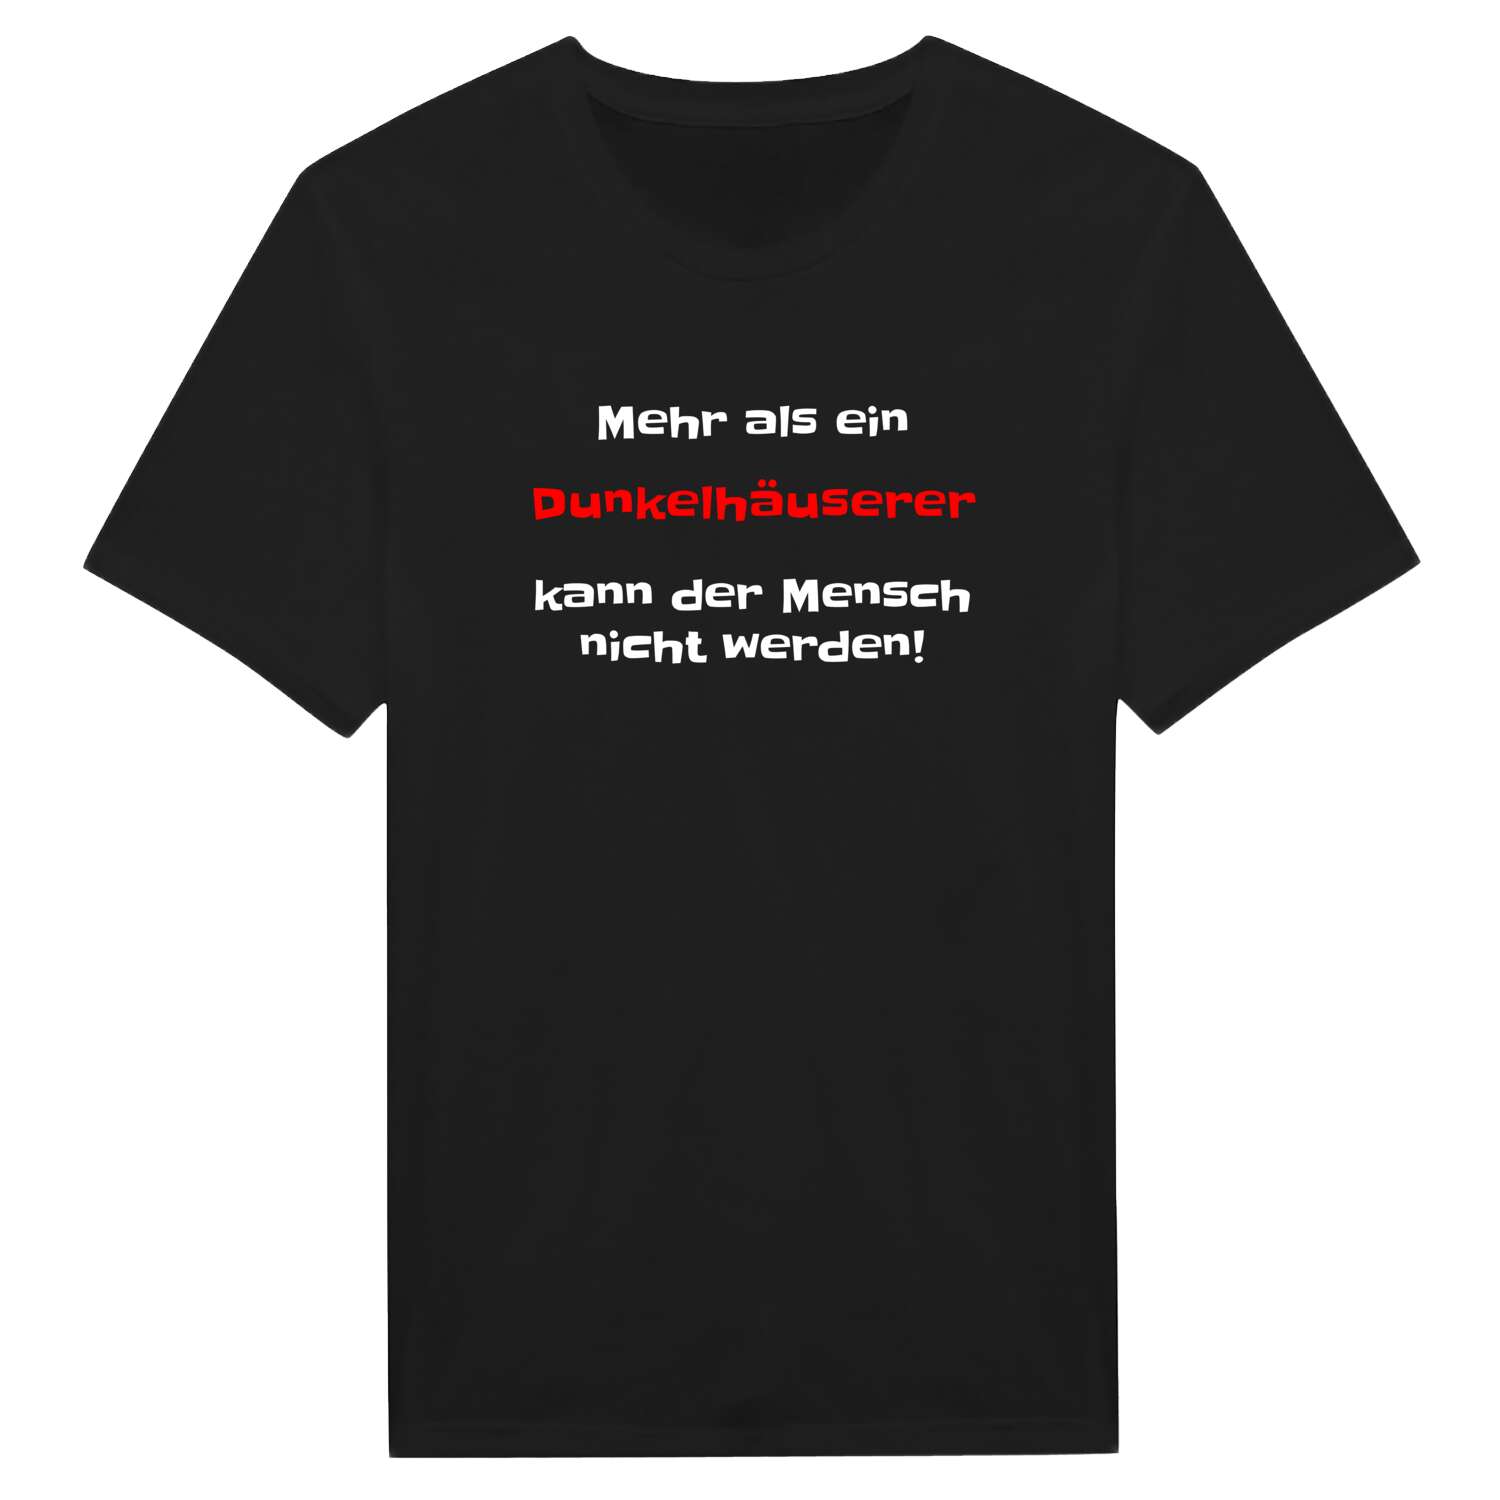 Dunkelhäuser T-Shirt »Mehr als ein«